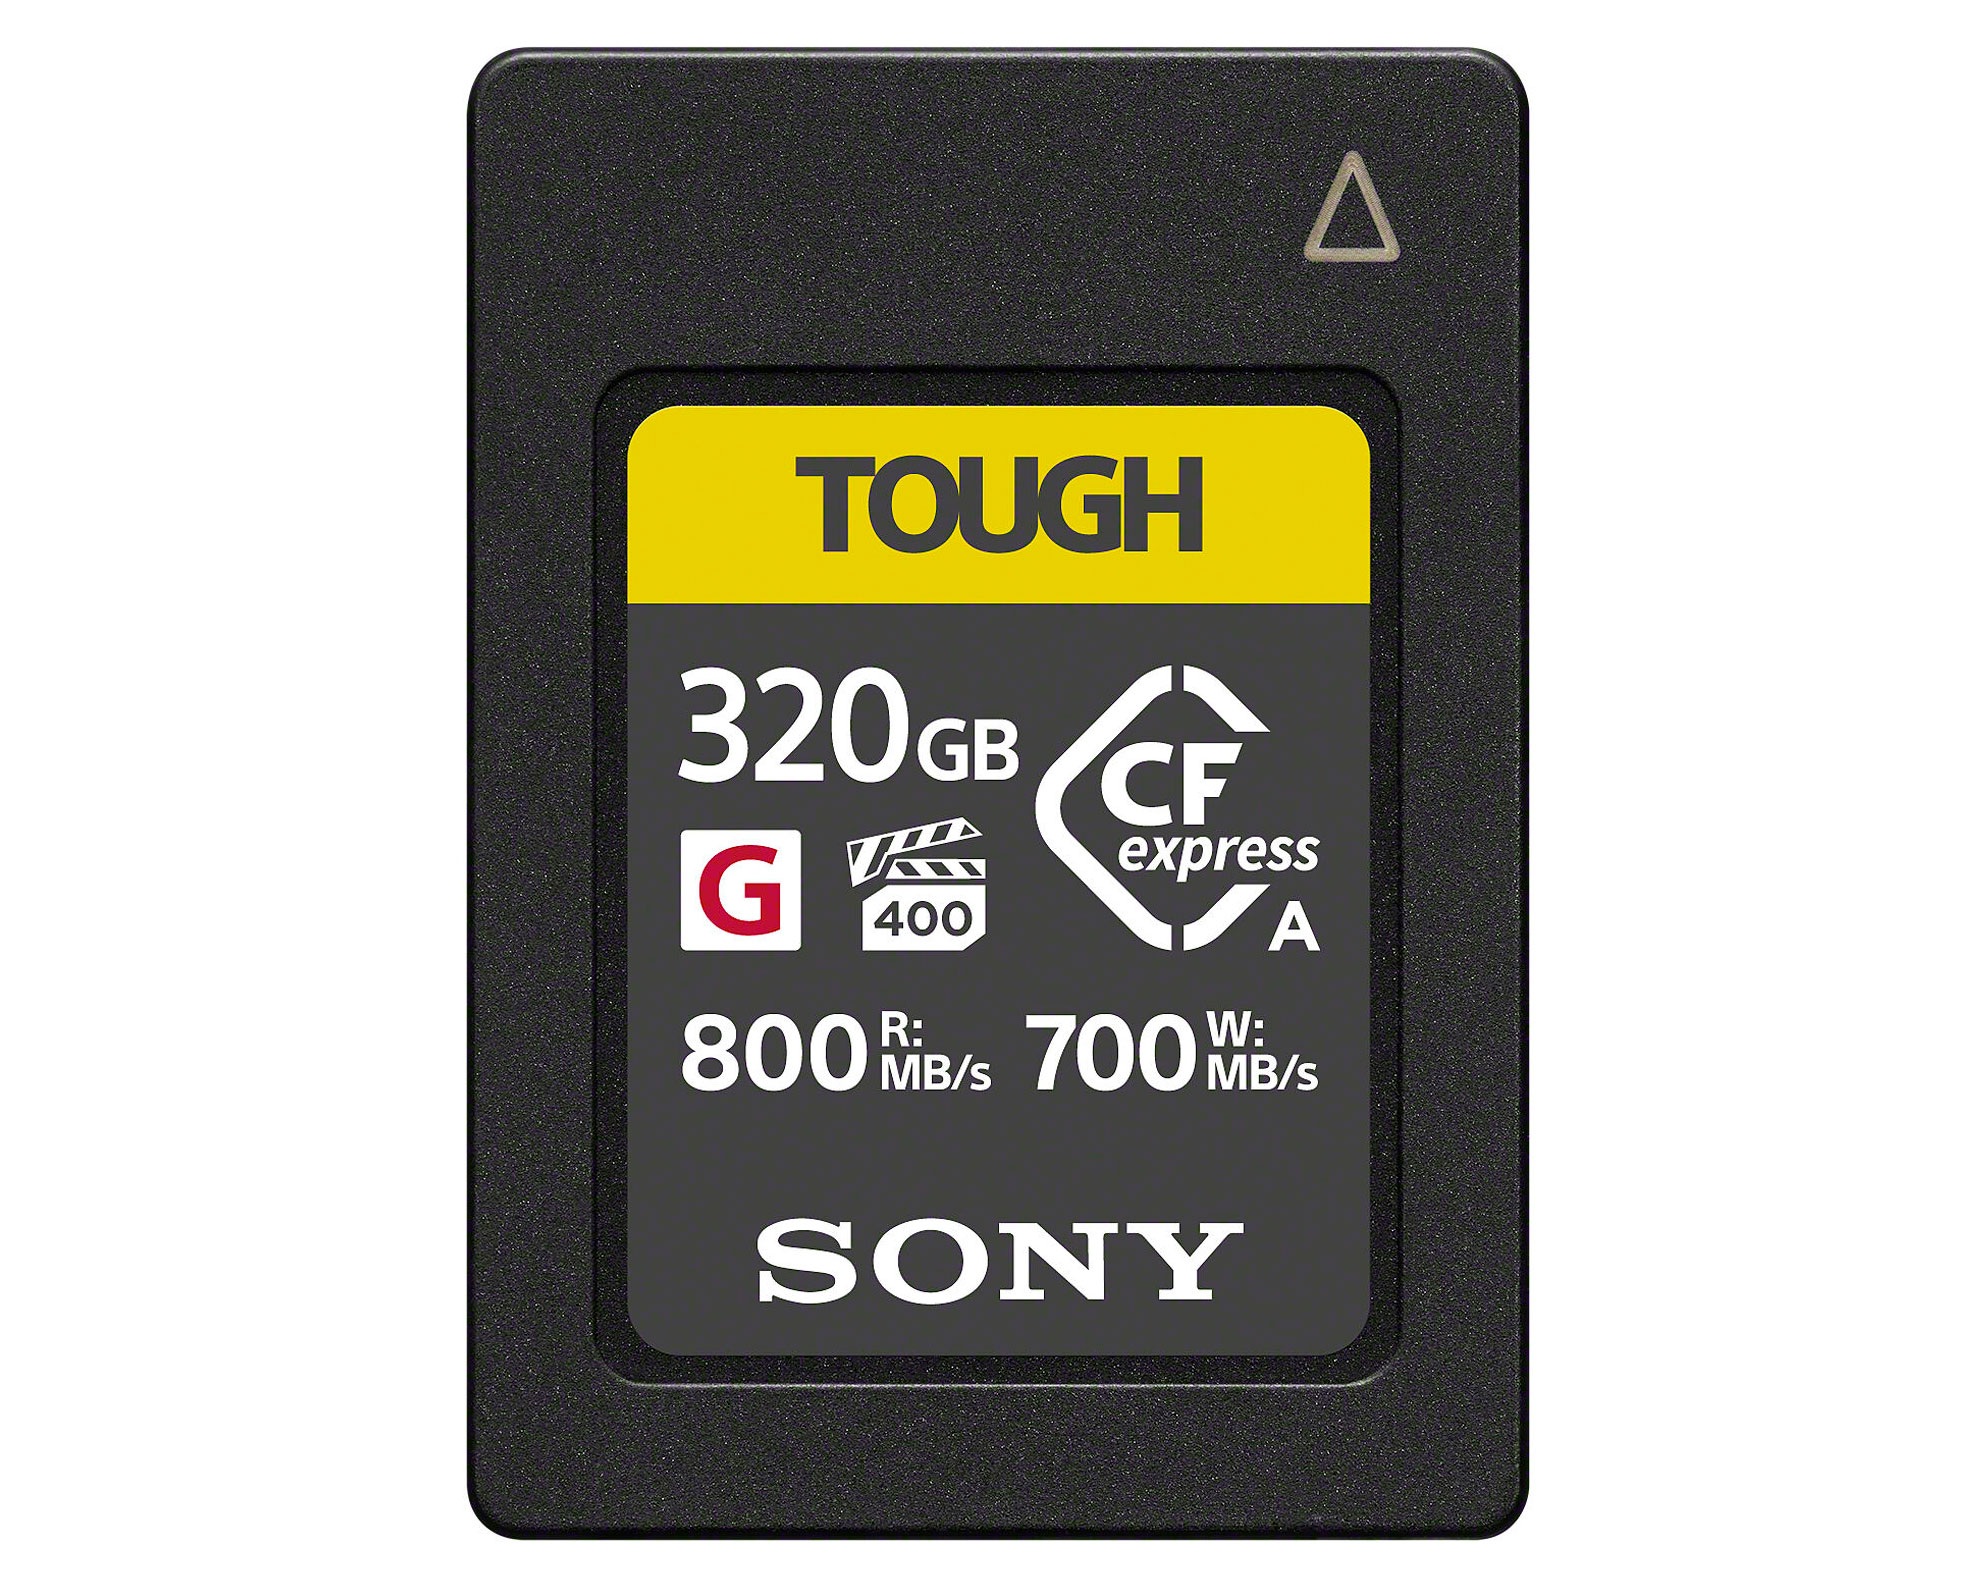 Sony CFexpress Type A Tough G 320GB